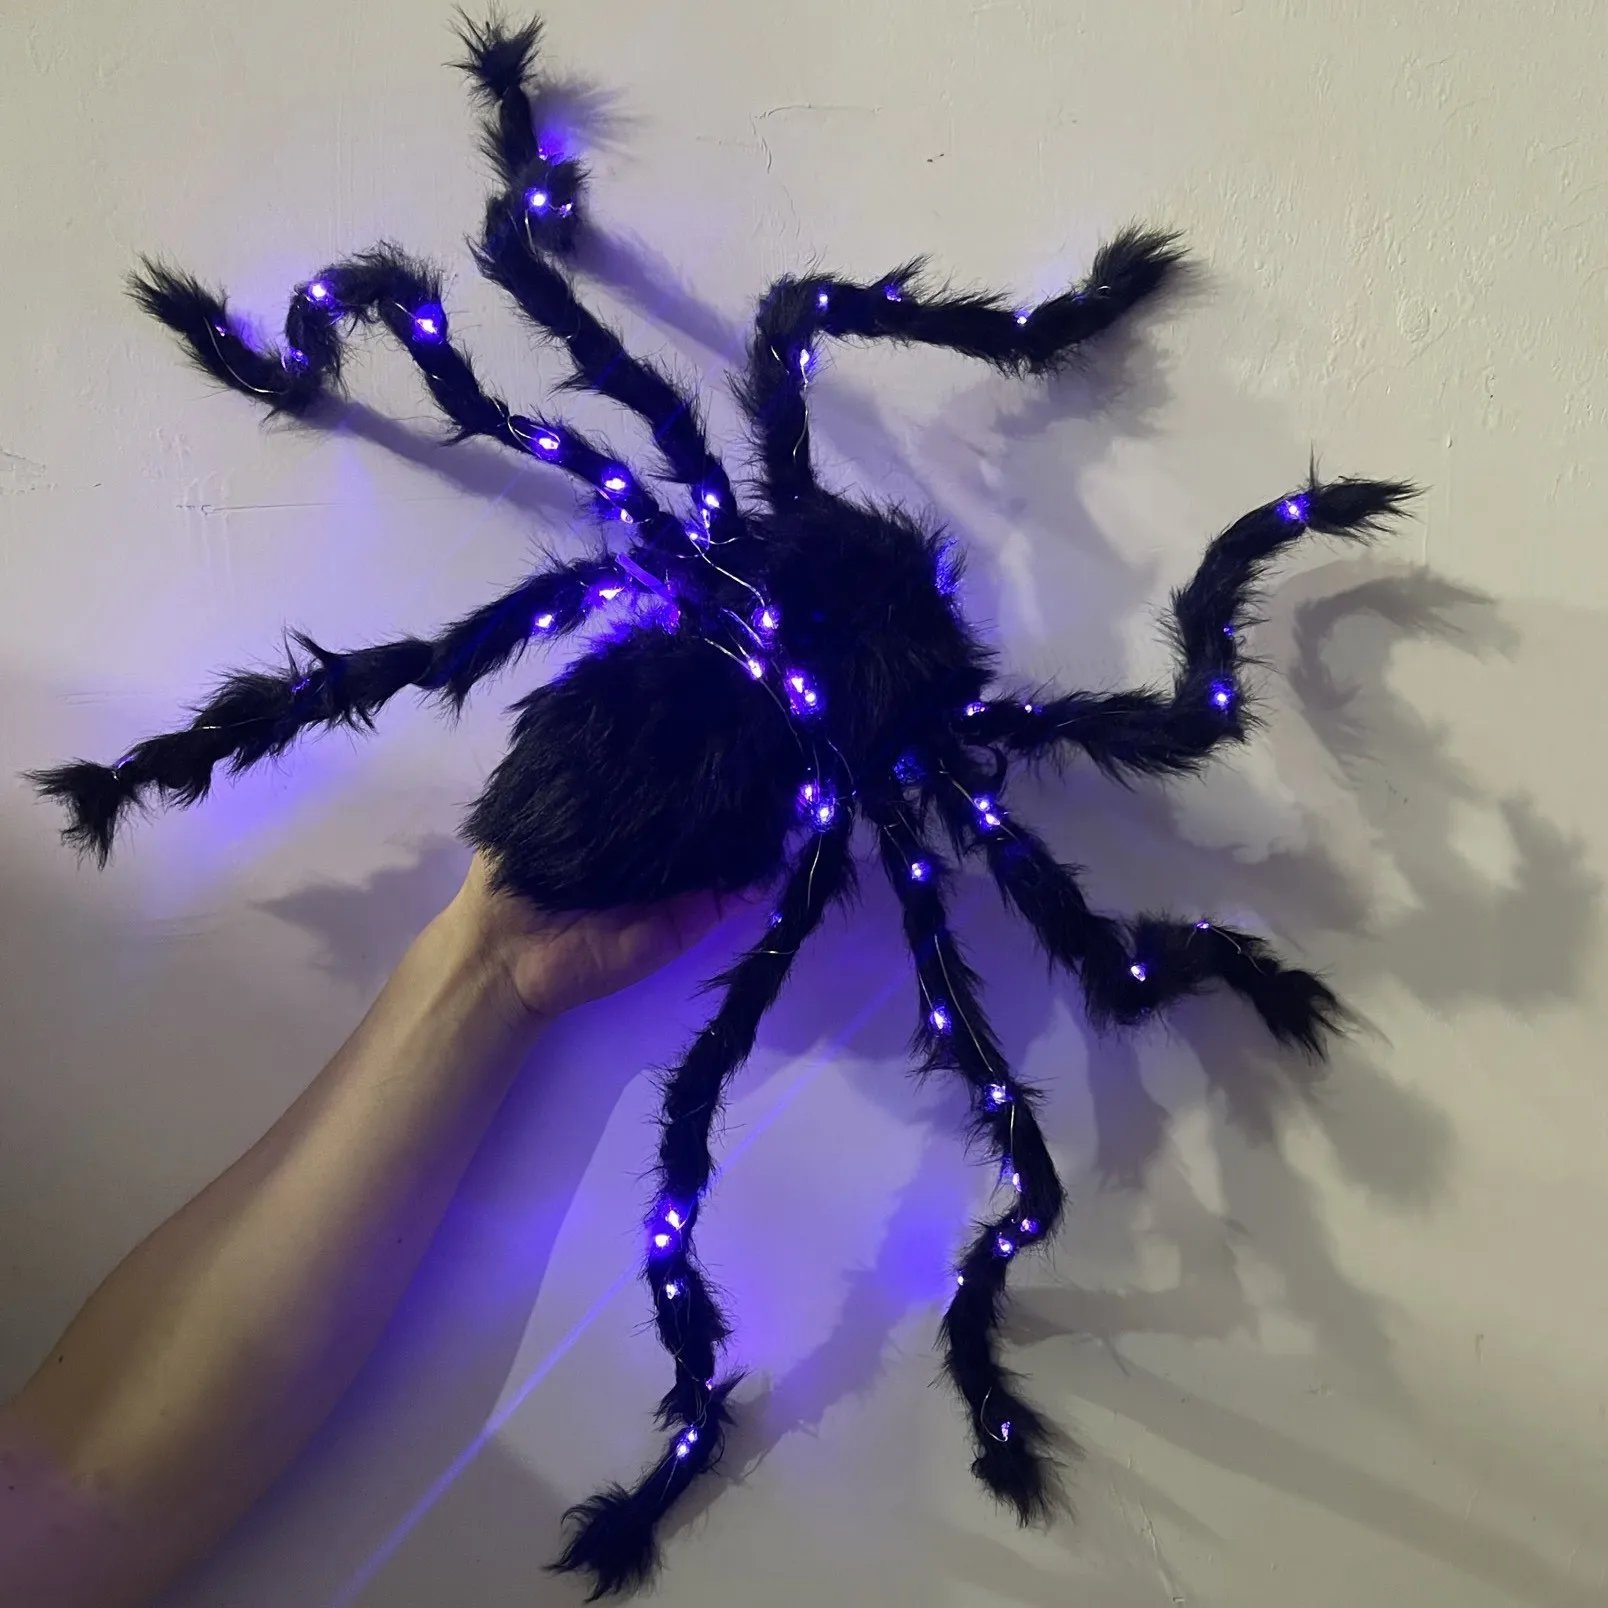 

Светящийся паук, украшение на Хэллоуин, привидение, фестиваль, плюшевый брусок, призрак, домик, реквизит, композиция, игрушка, черная имитация, все люди